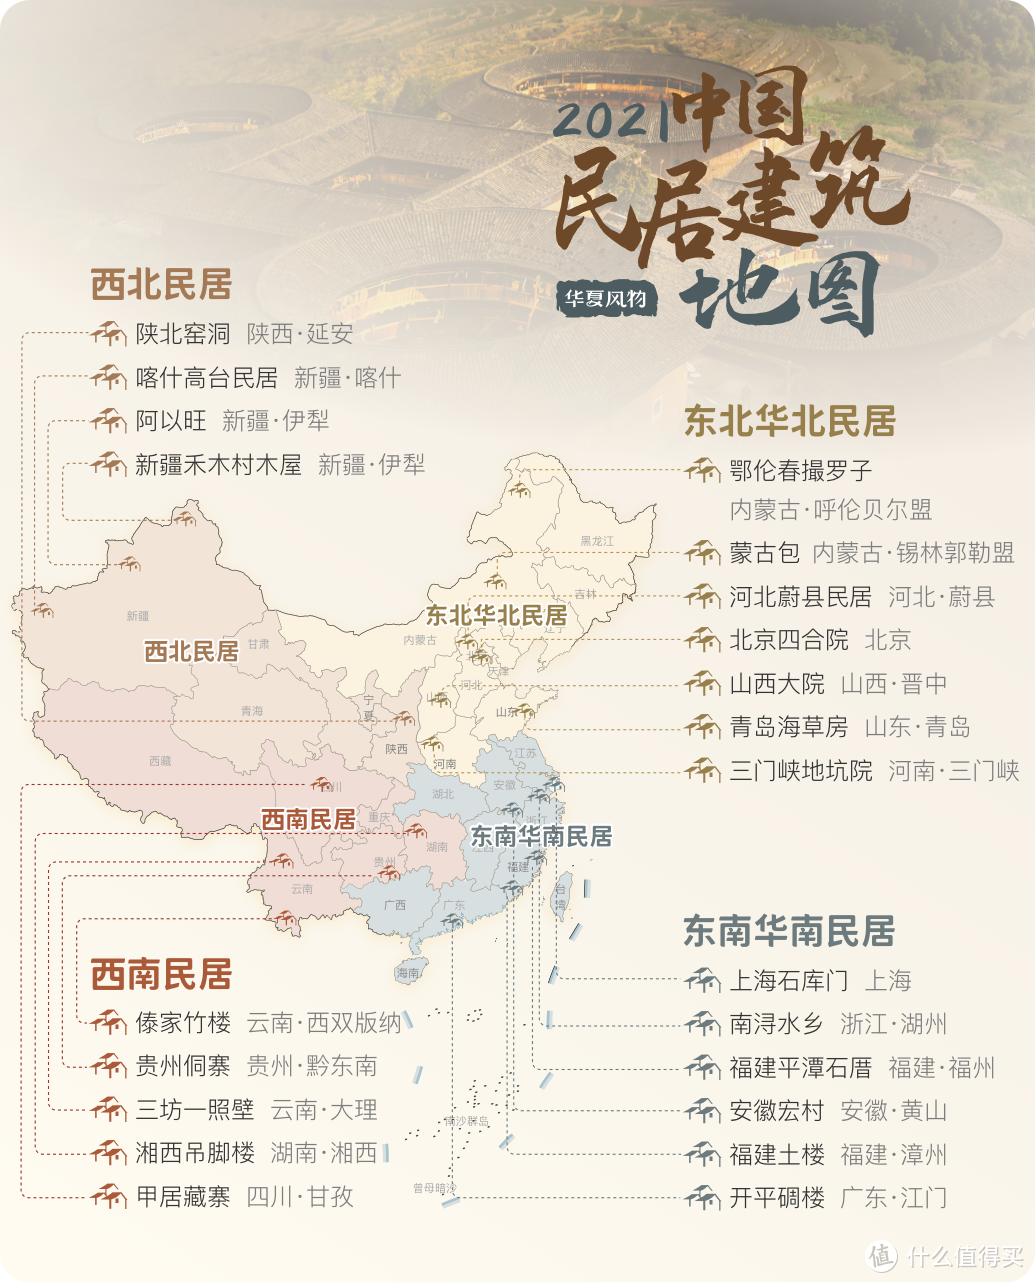 中国民居建筑地图 ©️华夏风物